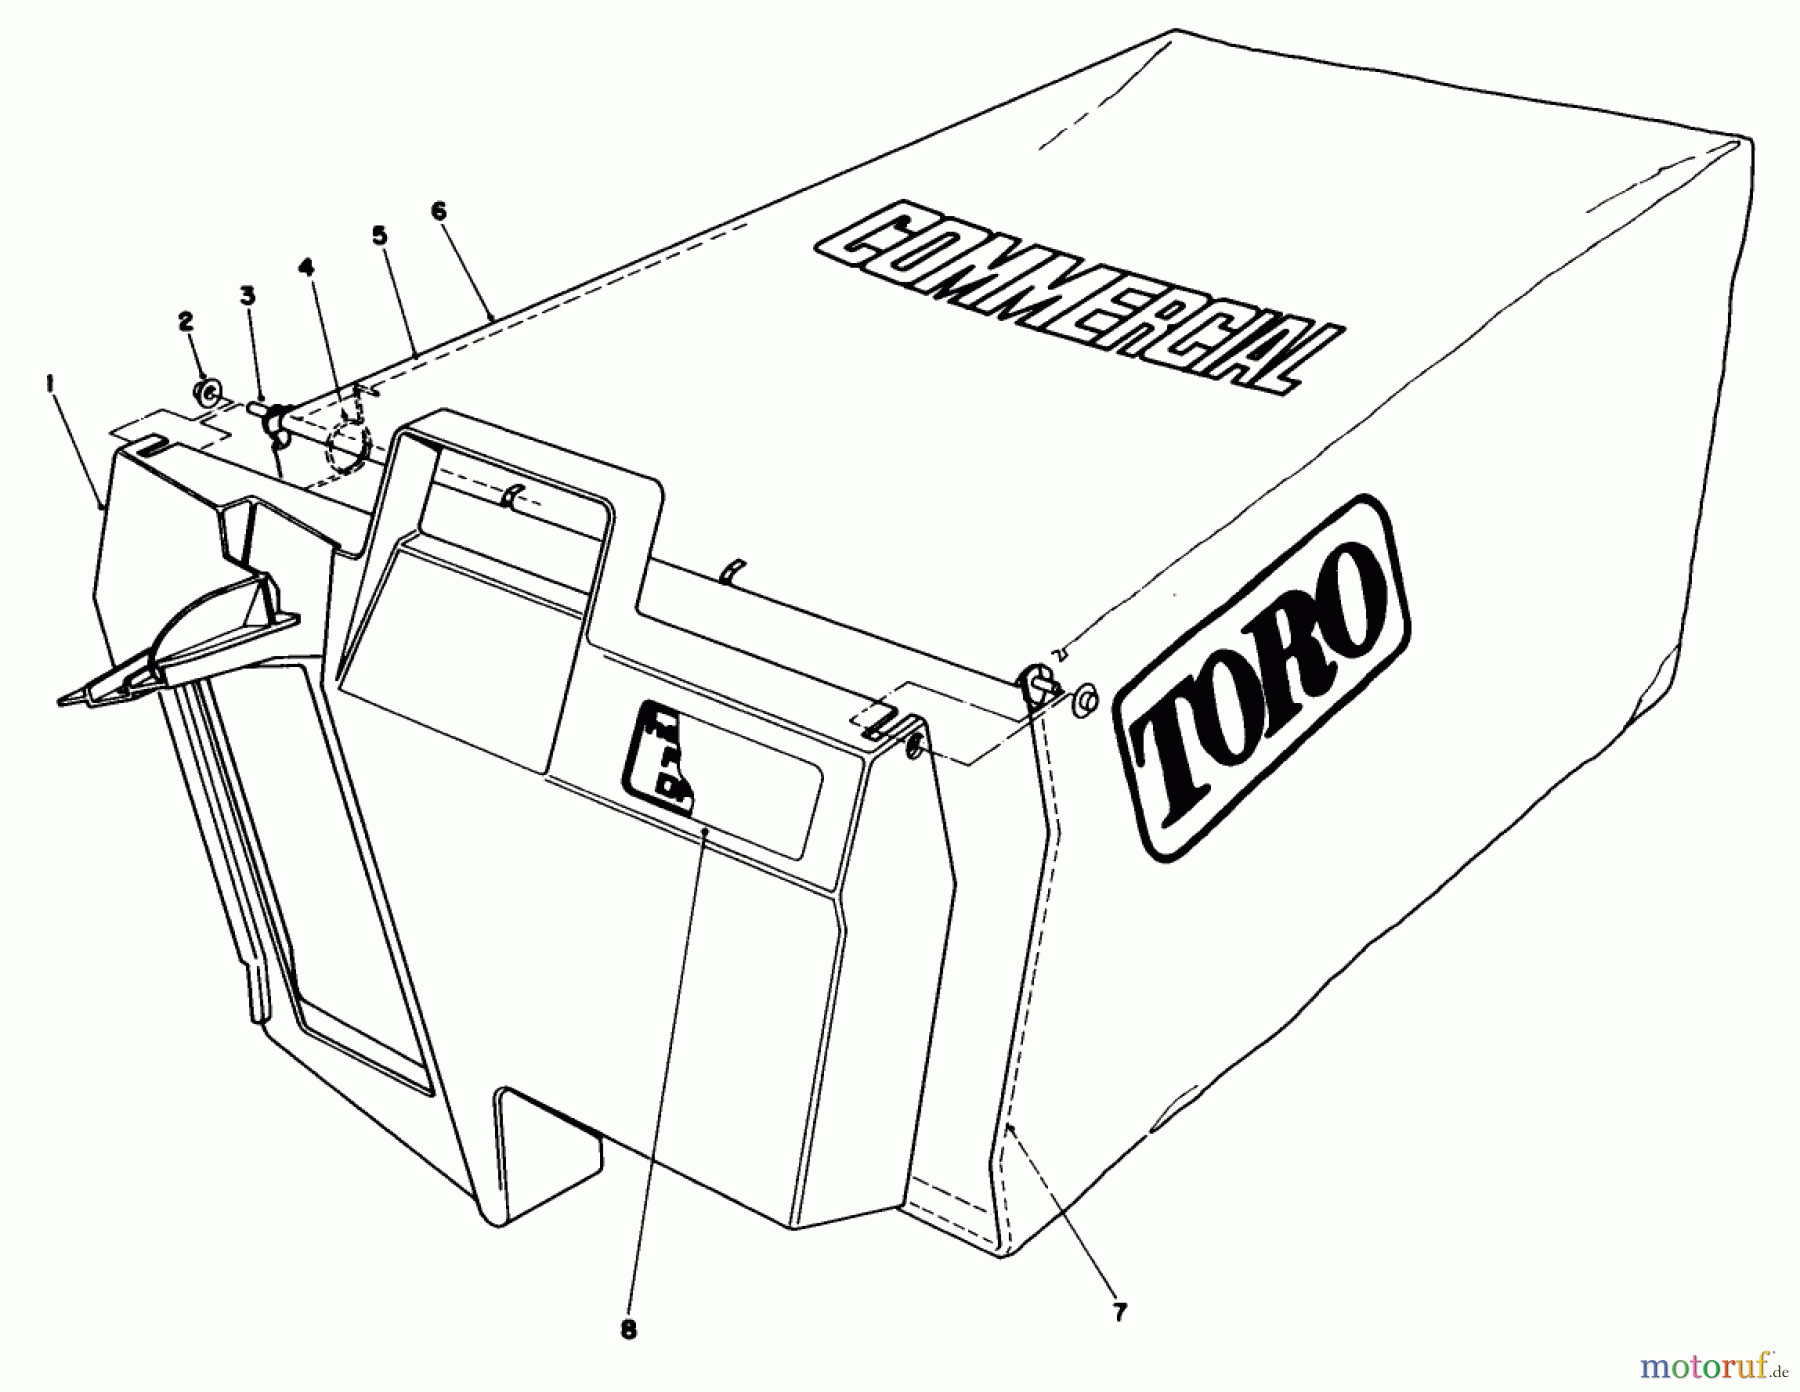  Toro Neu Mowers, Walk-Behind Seite 2 22035 - Toro Lawnmower, 1985 (5000001-5999999) GRASS BAG ASSEMBLY NO. 11-5609